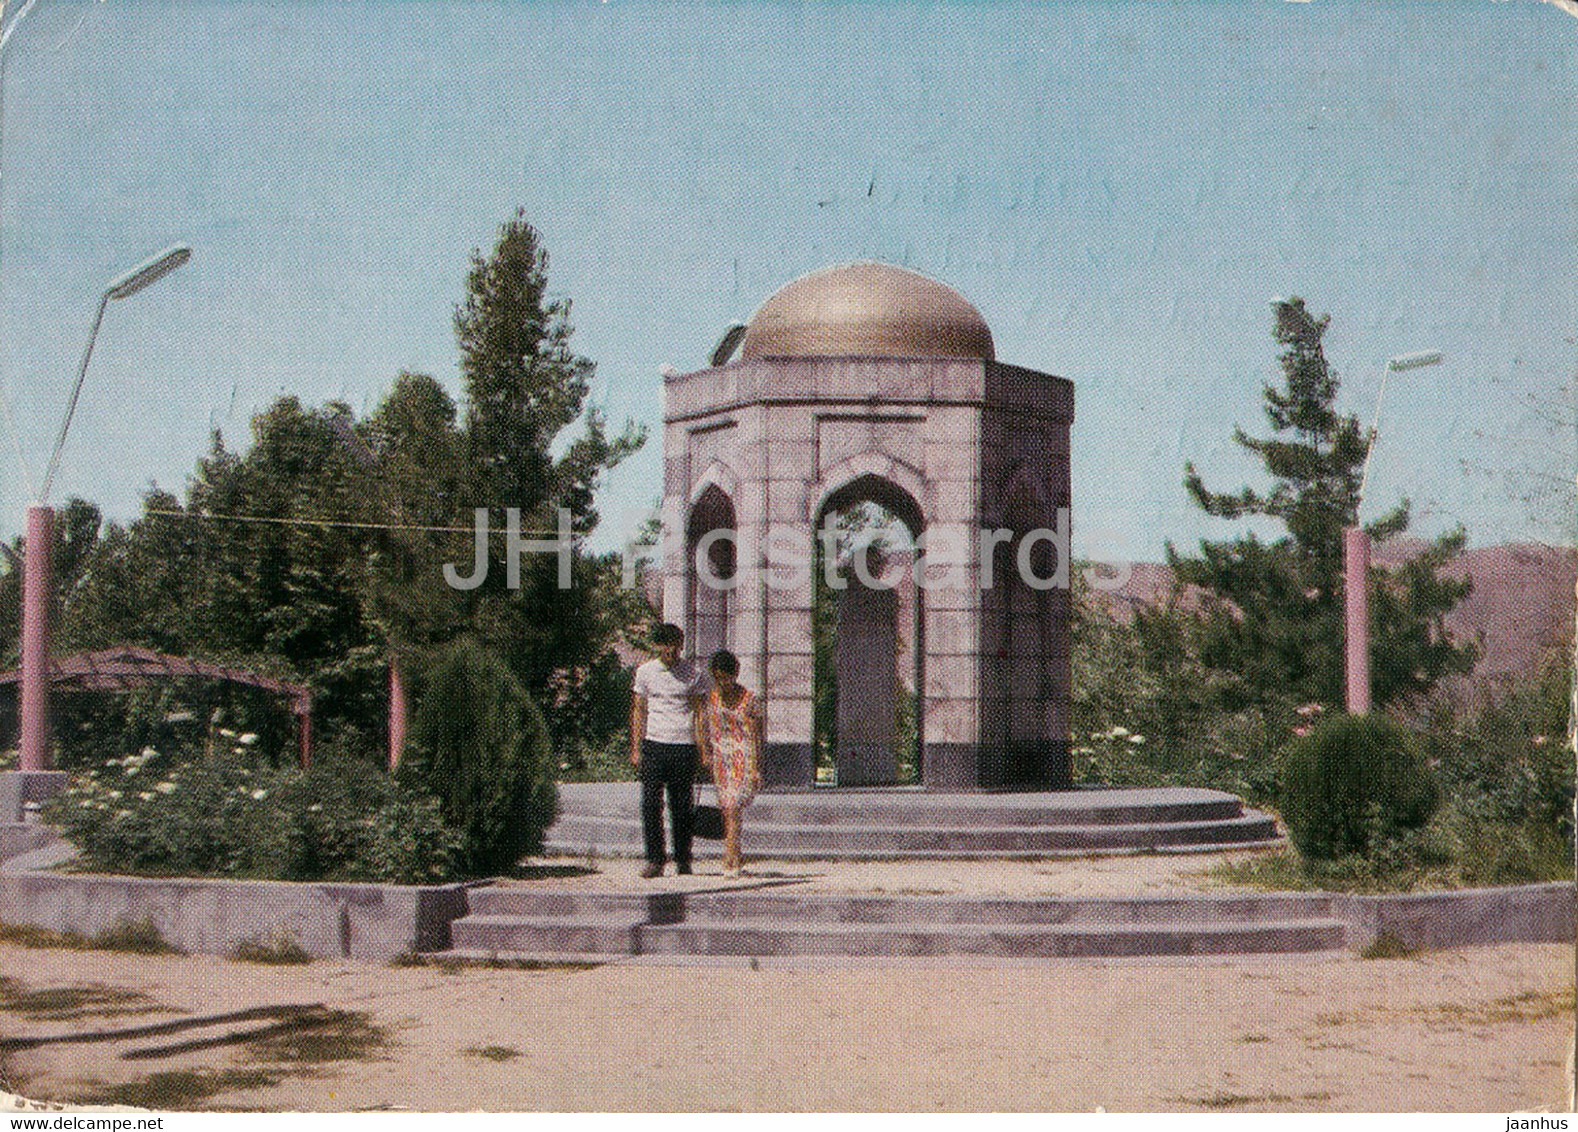 Dushanbe - Ayni Park - Postal Stationery - 1973 - Tajikistan USSR - Used - Tadschikistan